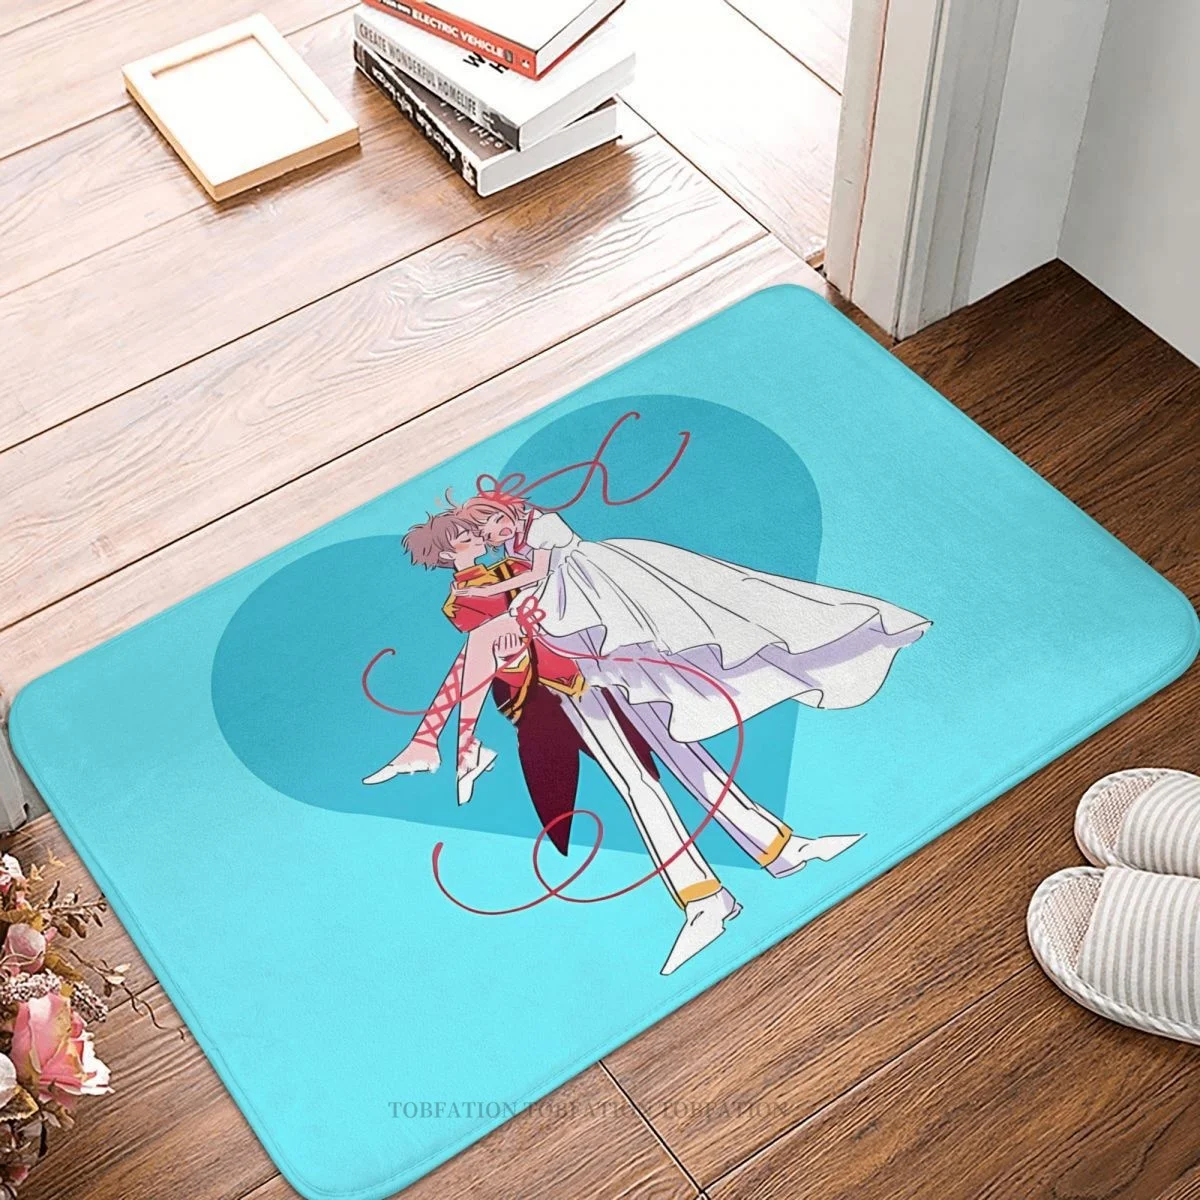 

Комикс-карта Captor Sakura, коврик для спальни, идеальная пара, дверной коврик, фланелевый ковер, коврик для балкона, украшение для дома